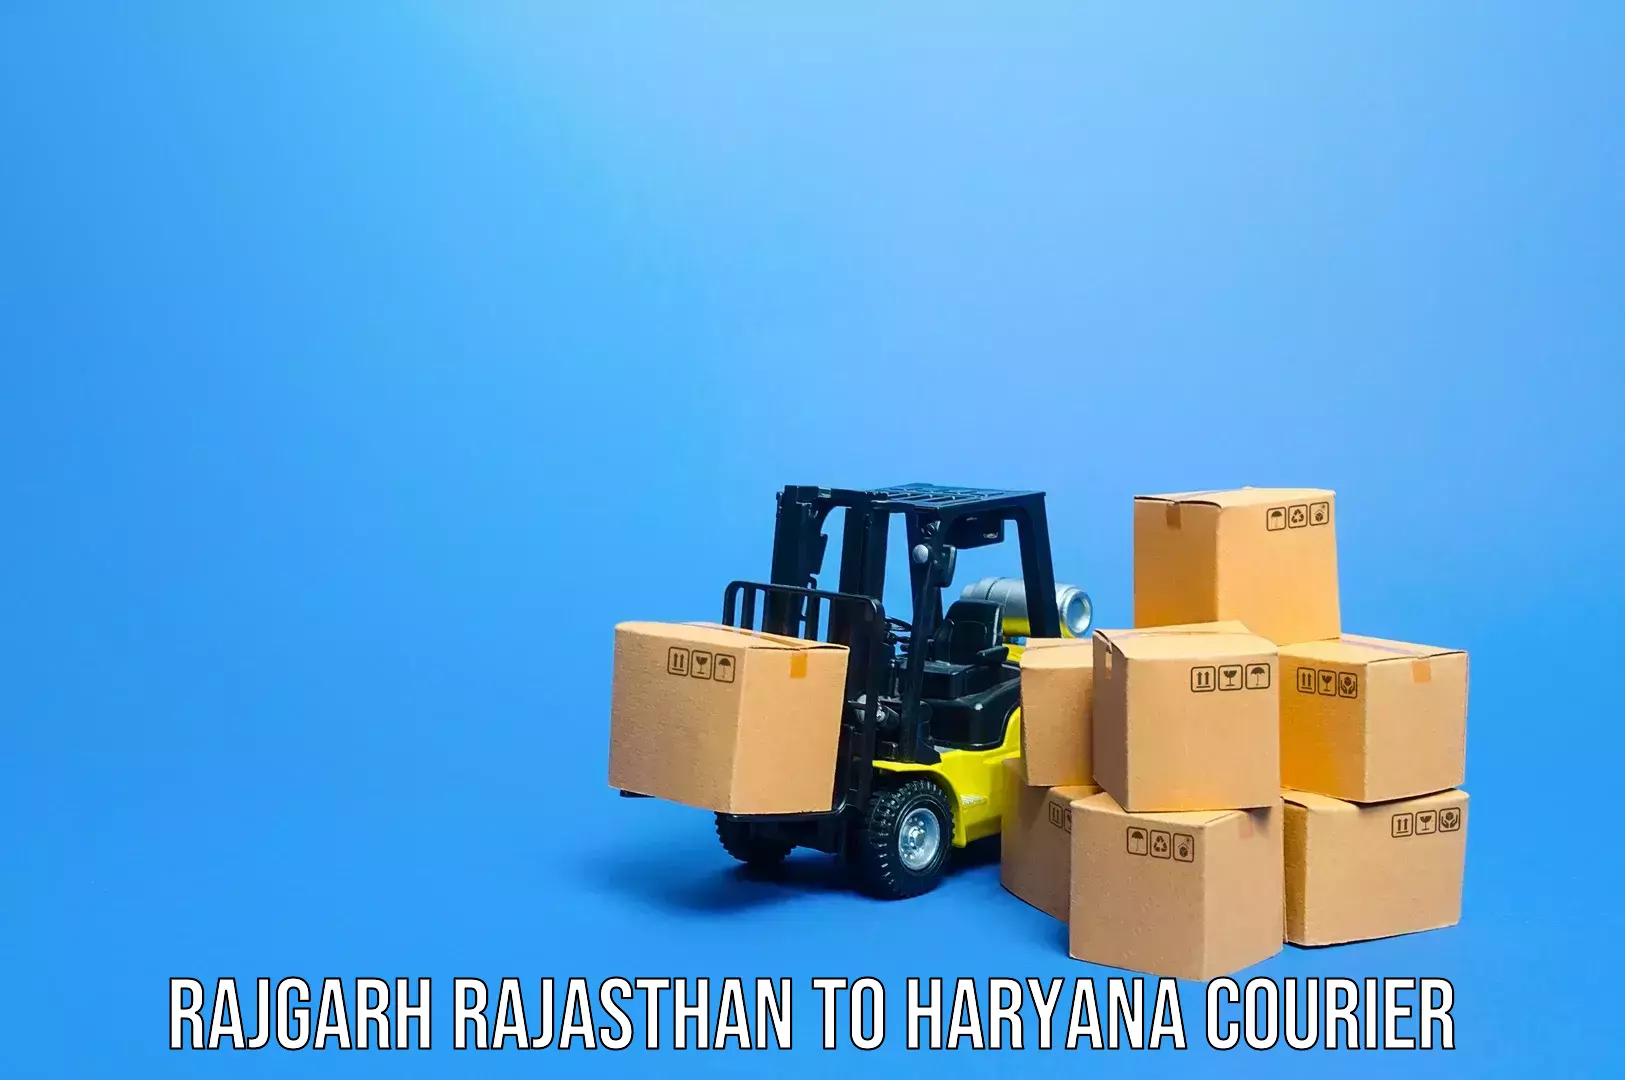 Luggage shipping guide Rajgarh Rajasthan to Kurukshetra University